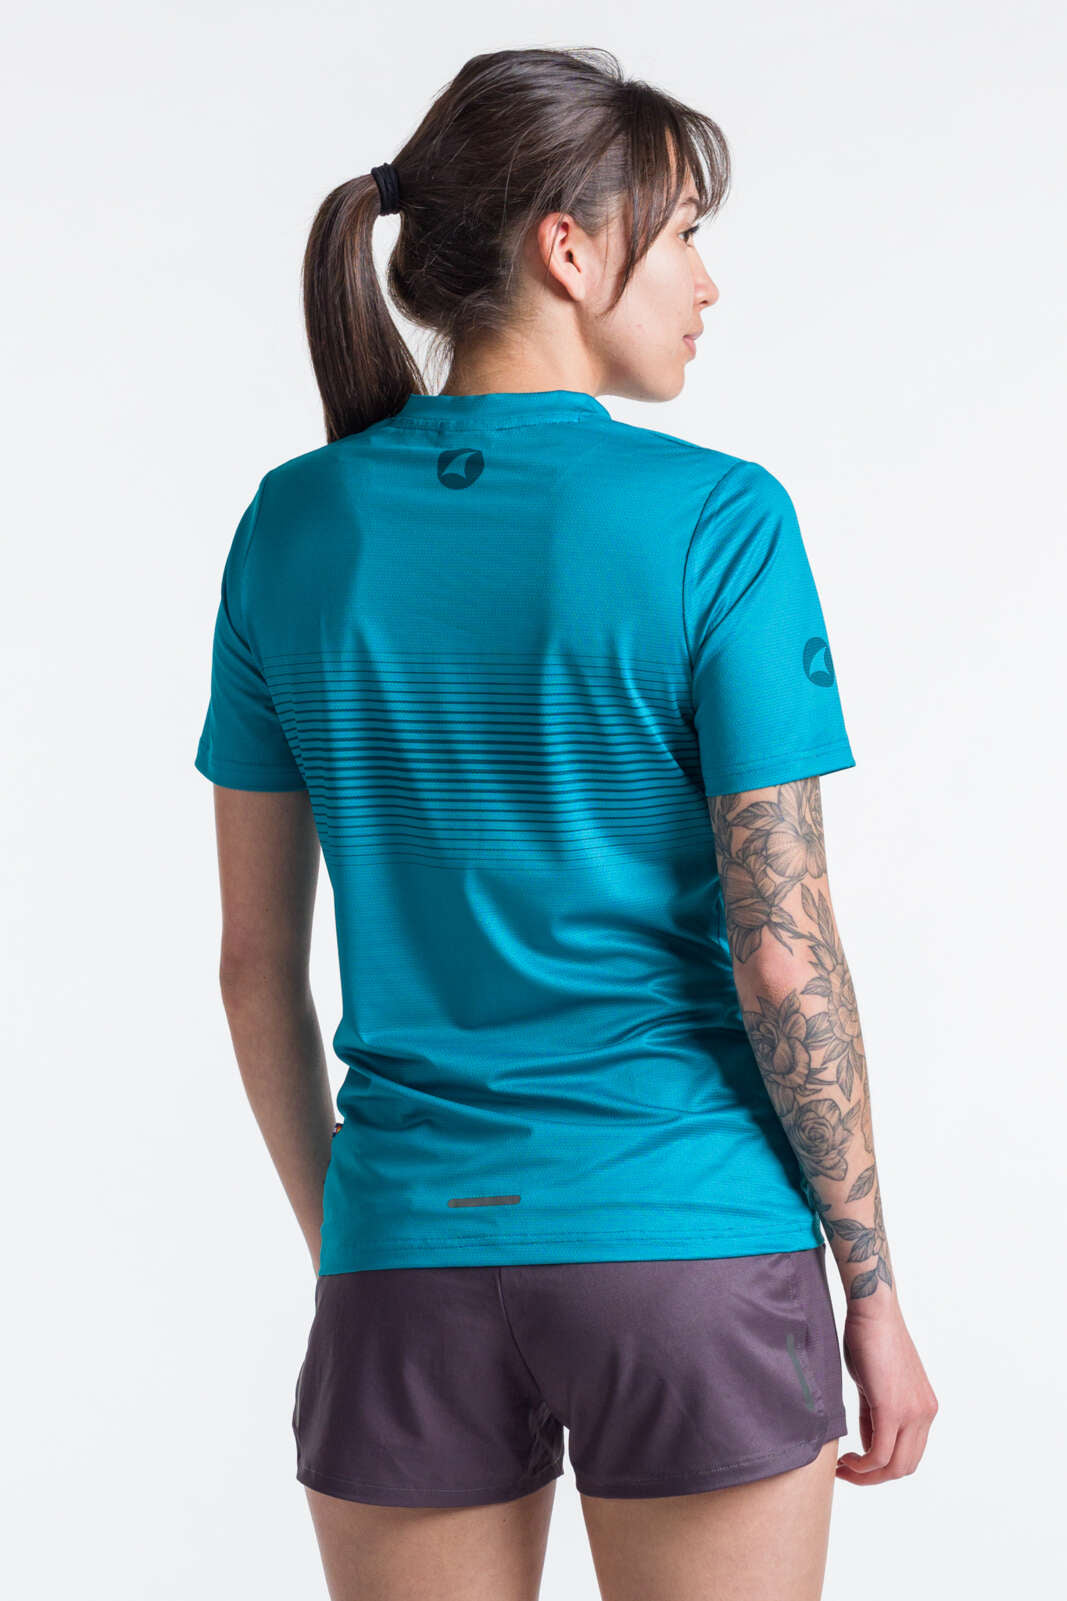 Women's Teal Running Shirt - Back View